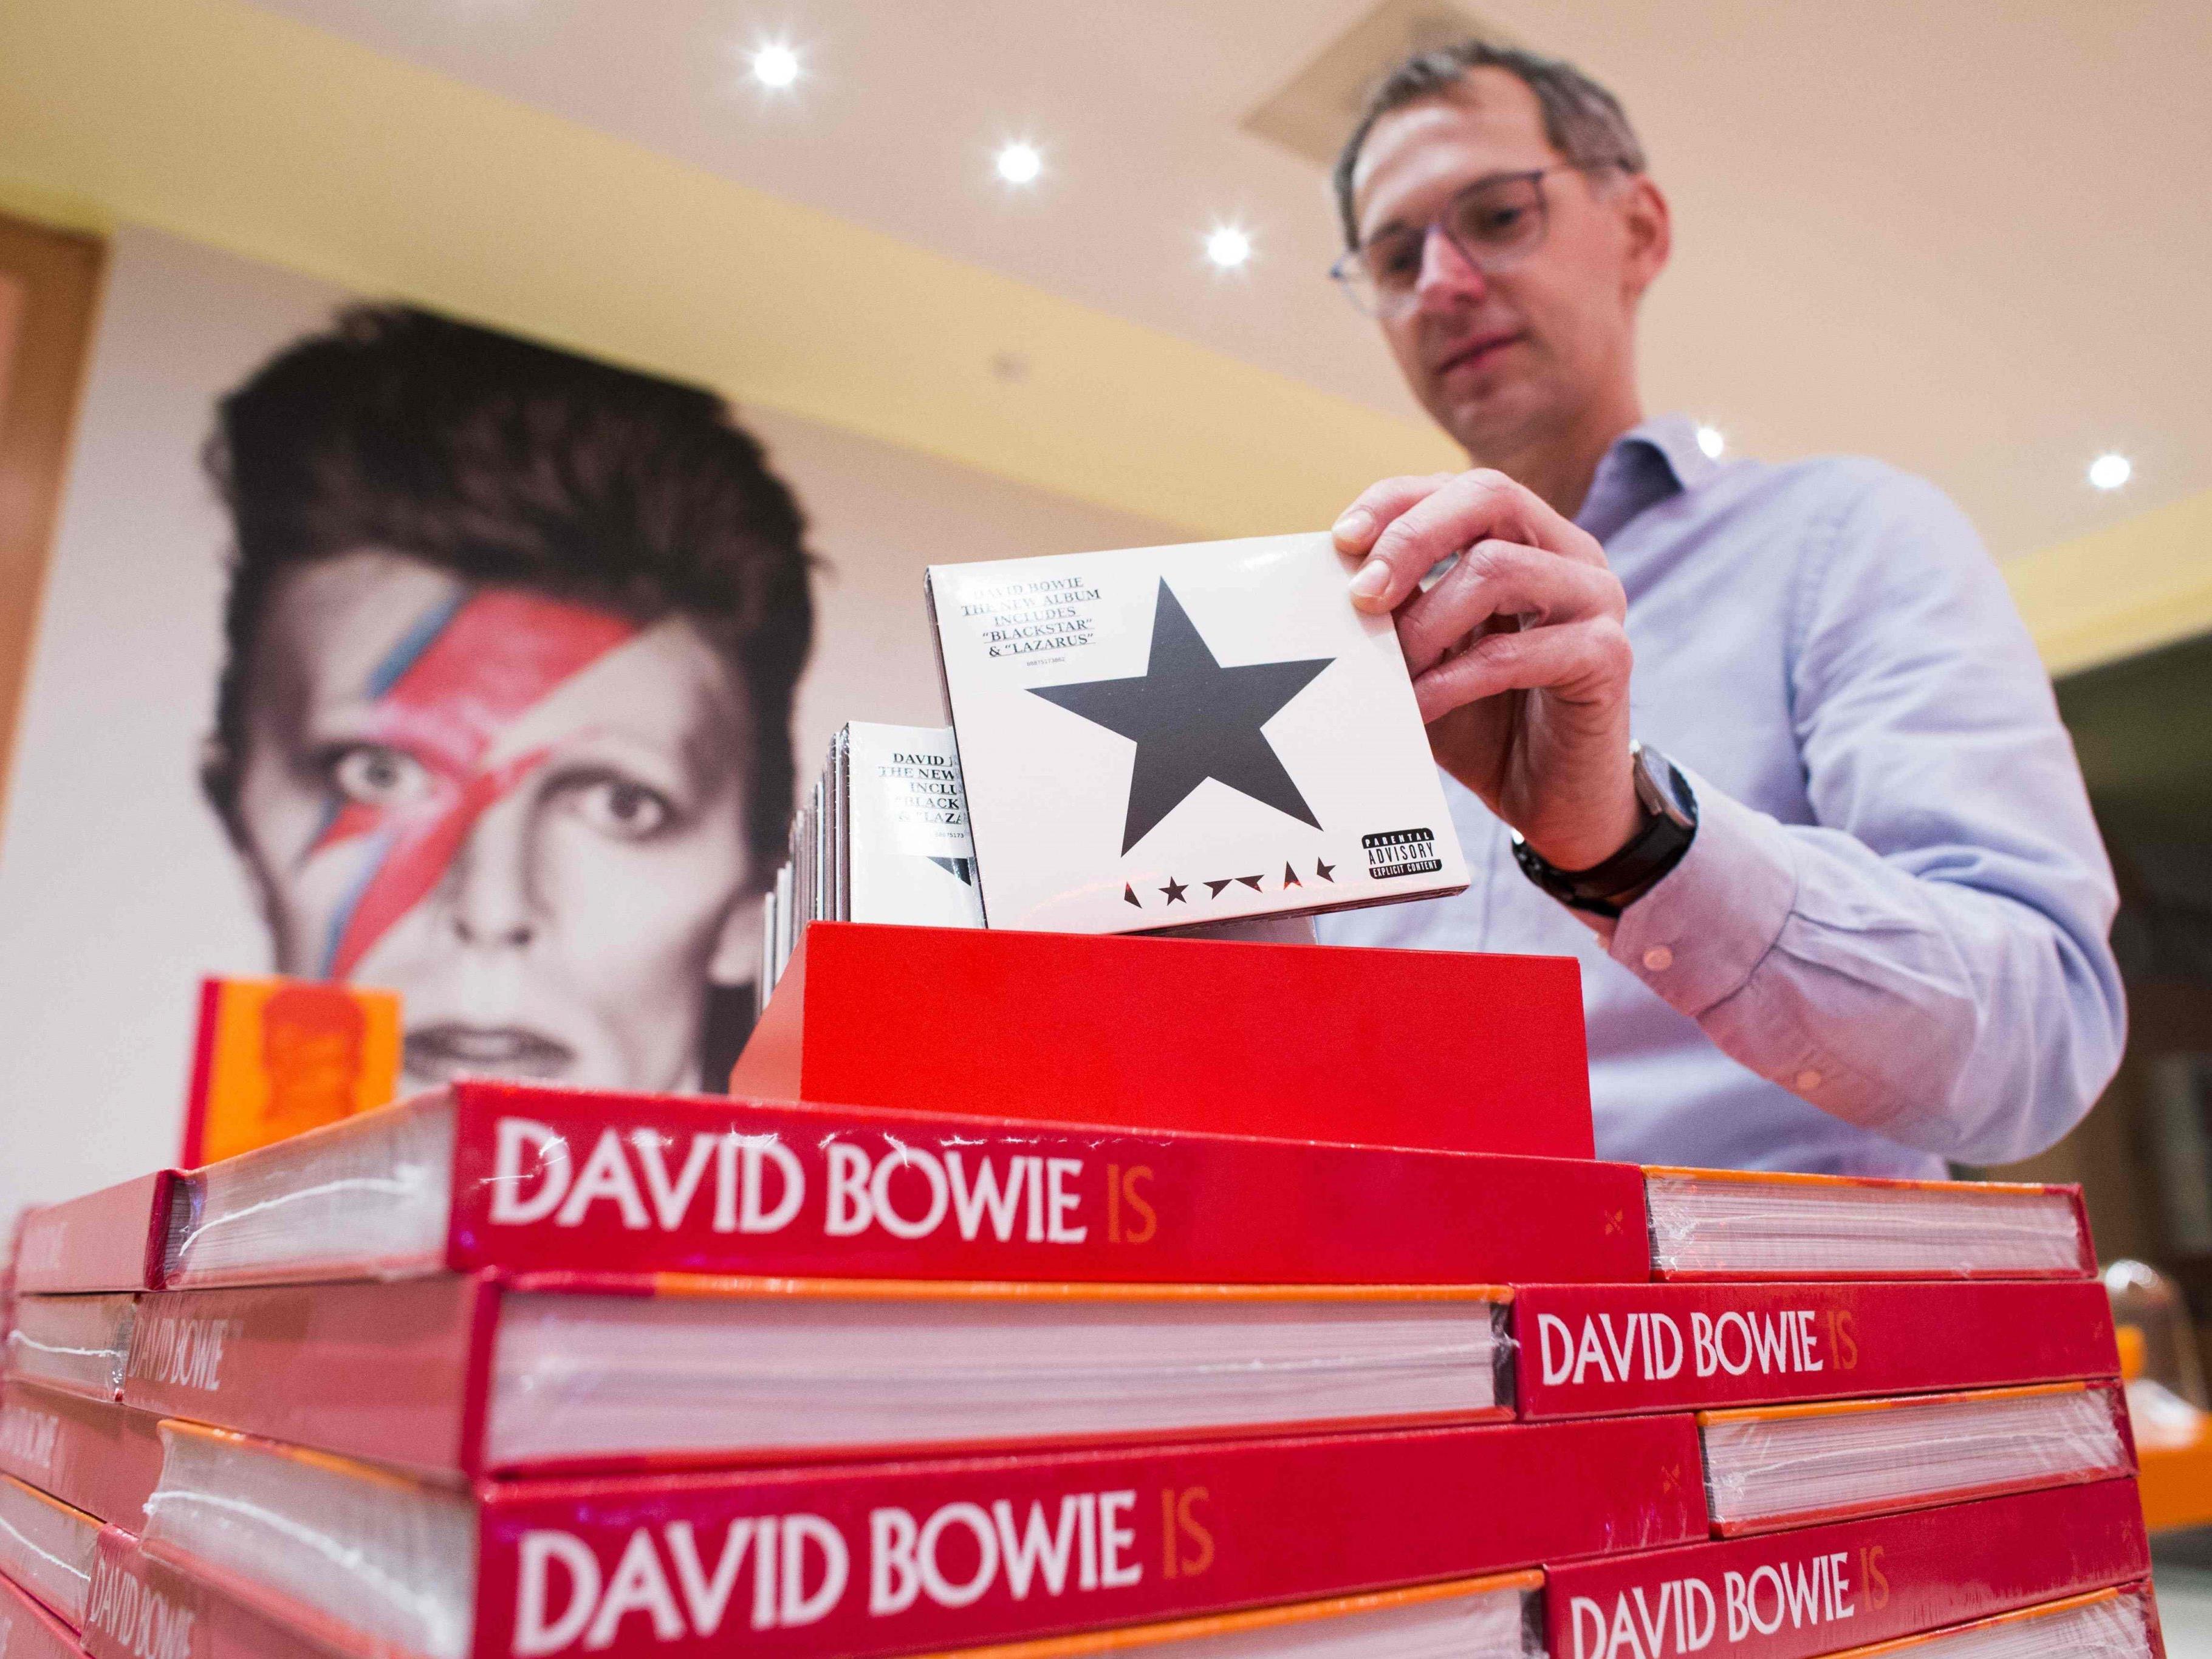 Es klingt wie eine düstere Ahnung: "Blackstar", also schwarzer Stern, heißt das letzte Album von David Bowie.